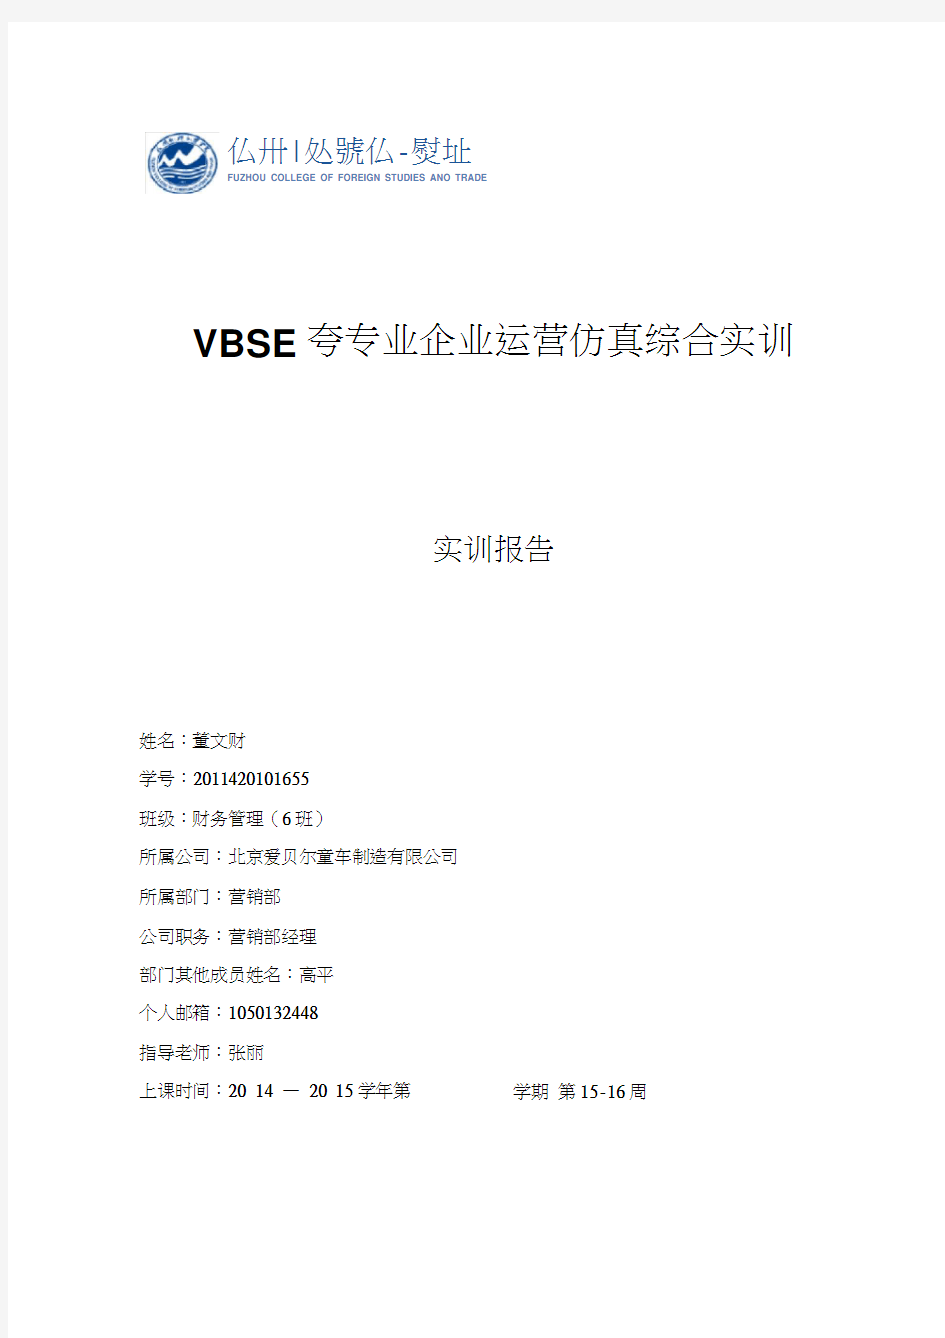 VBSE跨专业企业运营仿真综合实训报告(20200702161027)